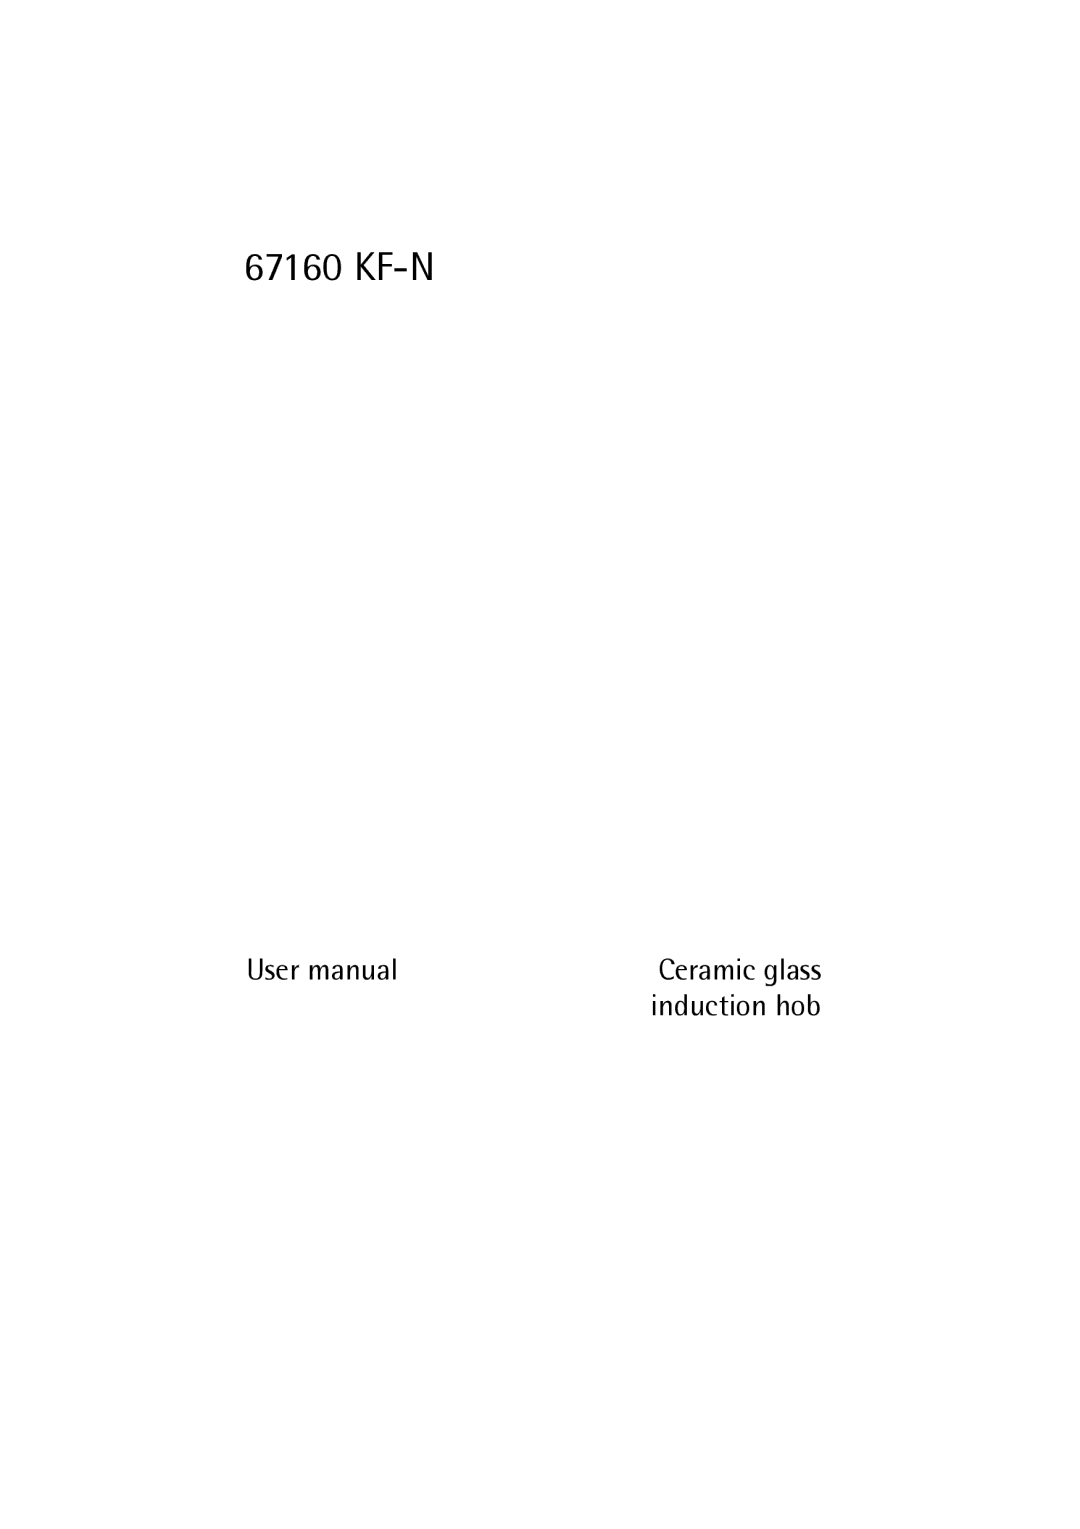 Electrolux 67160 KF-N user manual Kf-N 